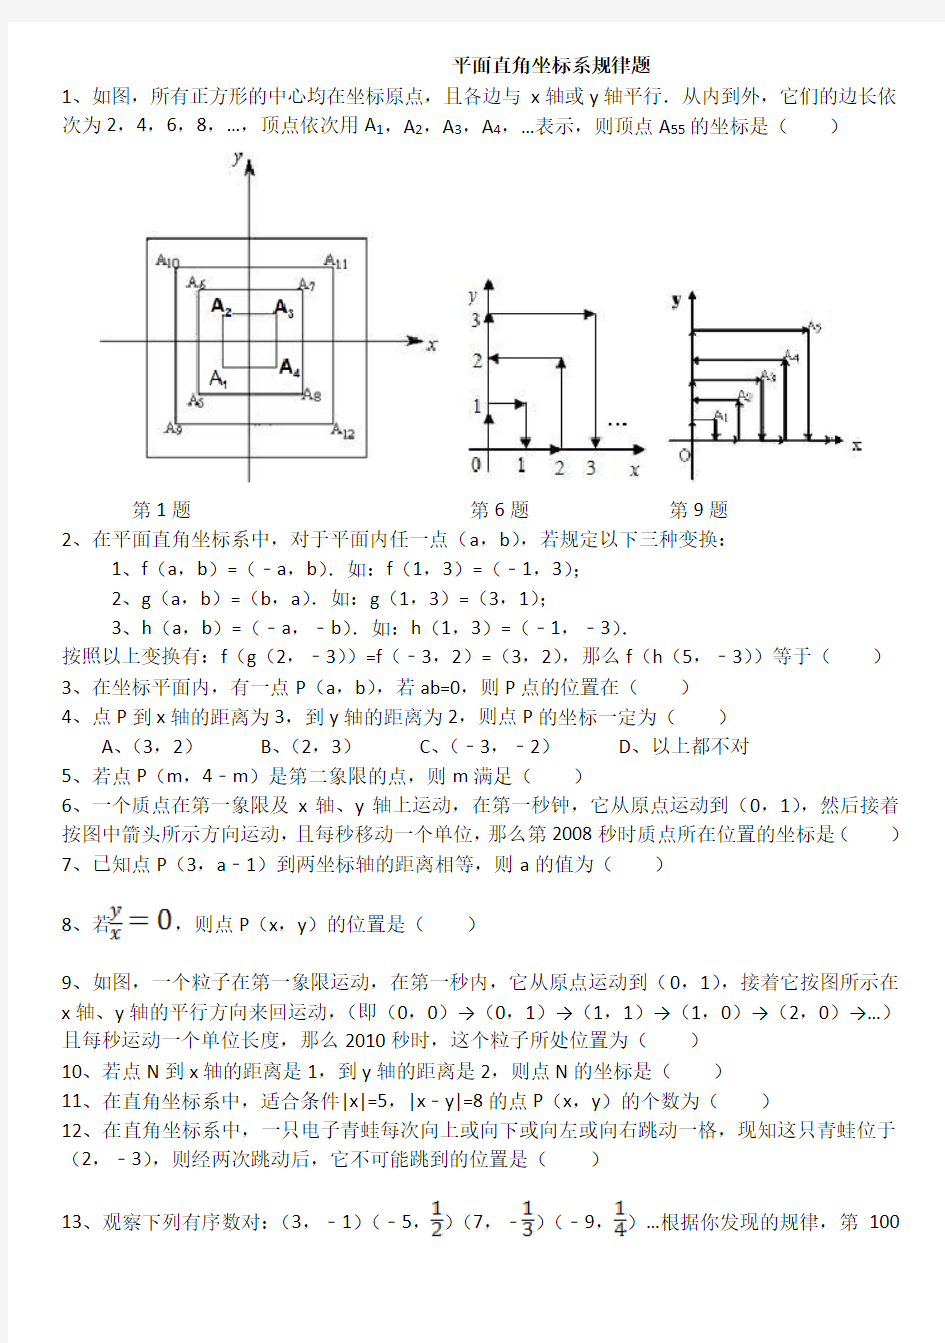 平面直角坐标系规律题 (2)